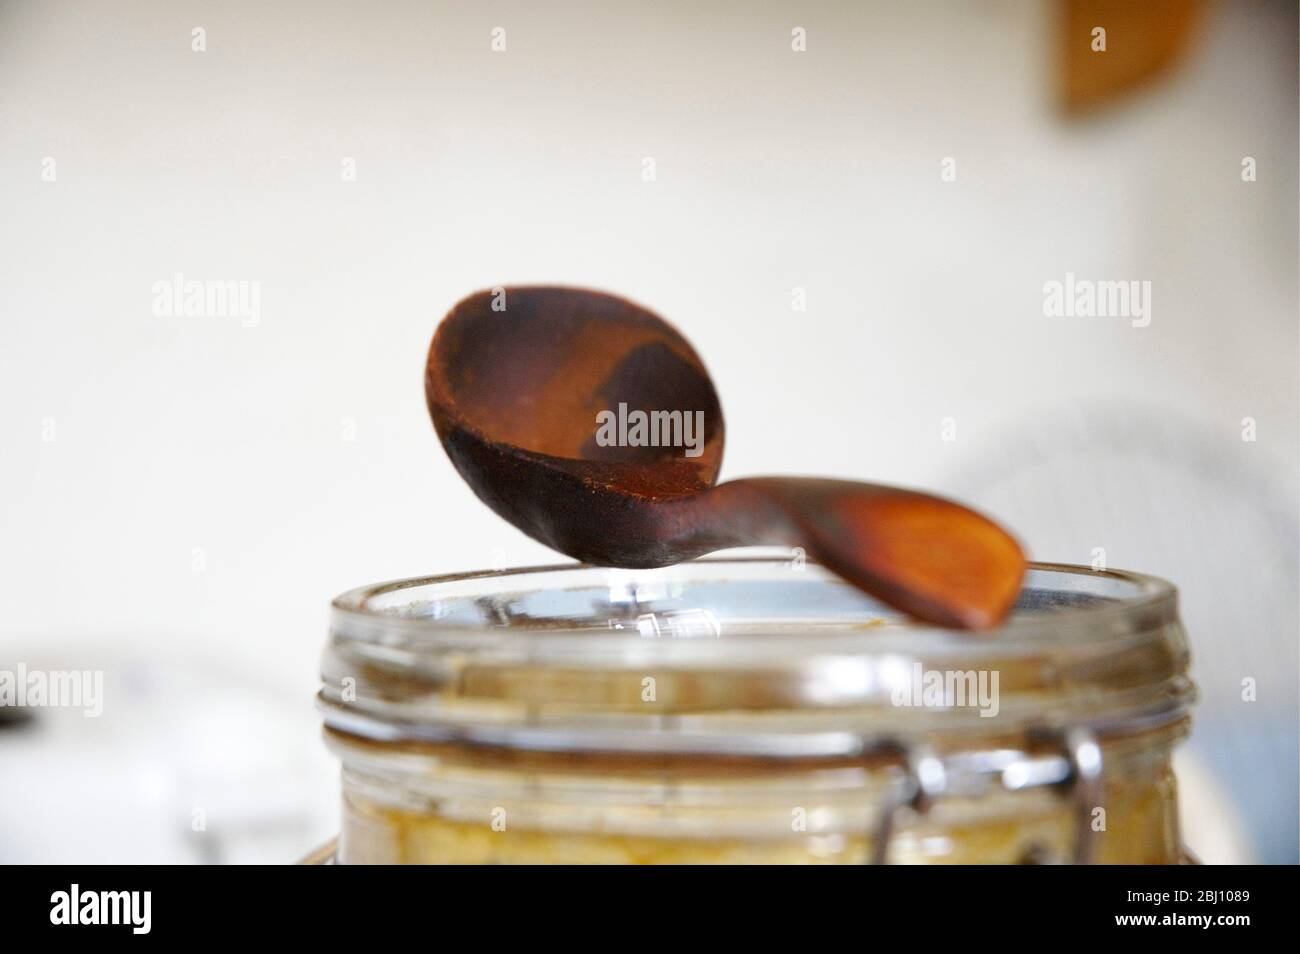 Misura di caffè in legno ben indossato bilanciata sulla parte superiore del vaso utilizzato per conservare il caffè - Foto Stock